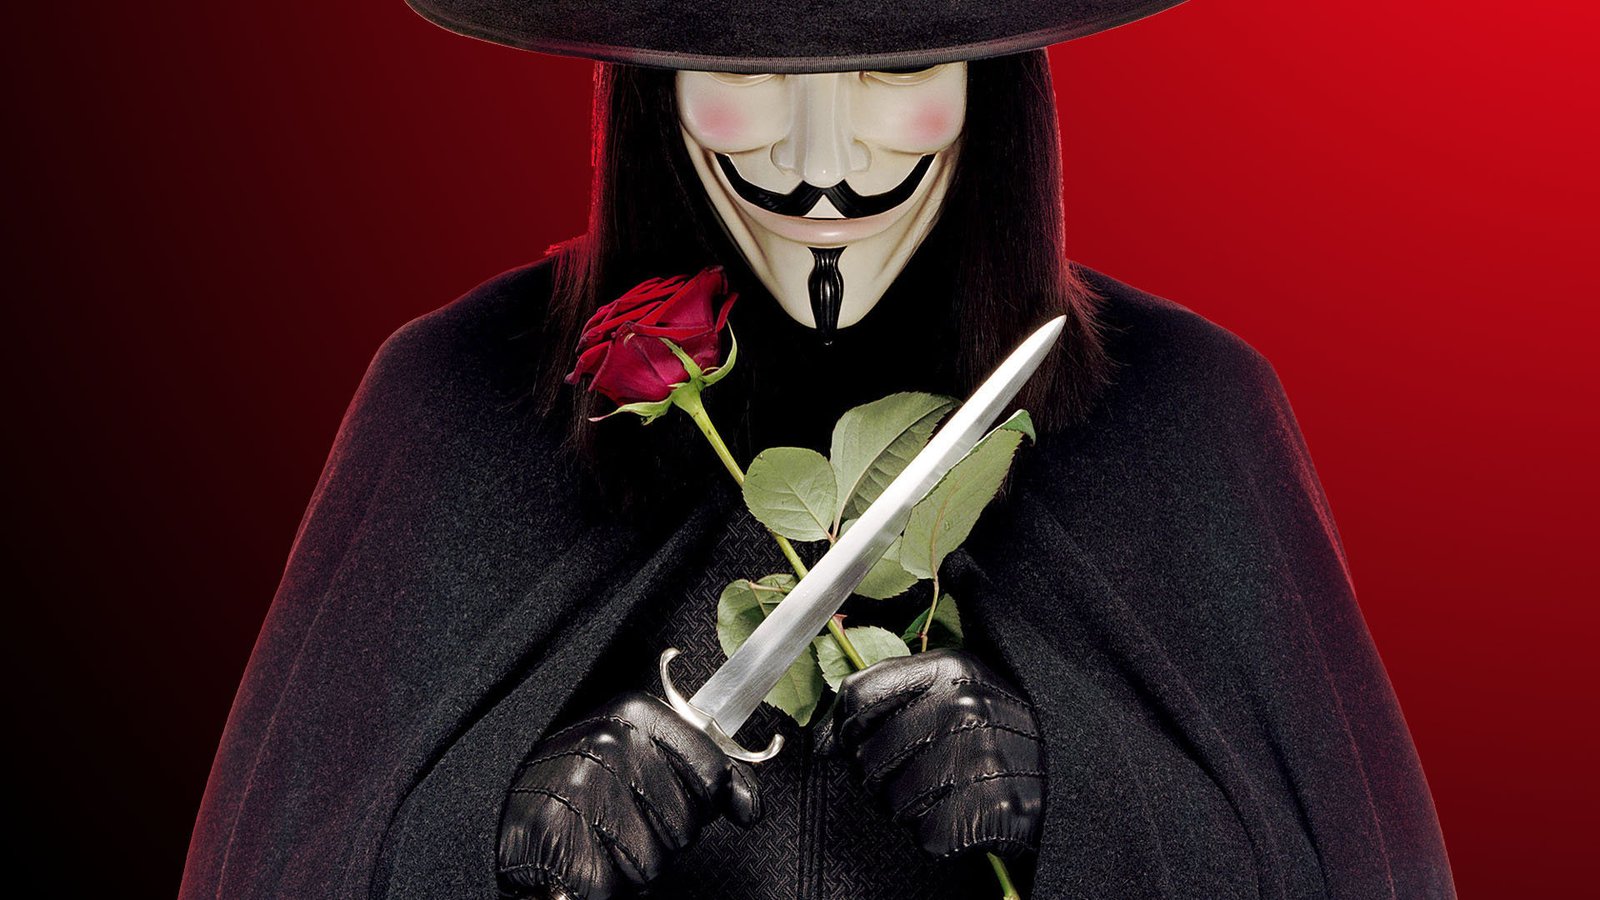  / V for Vendetta